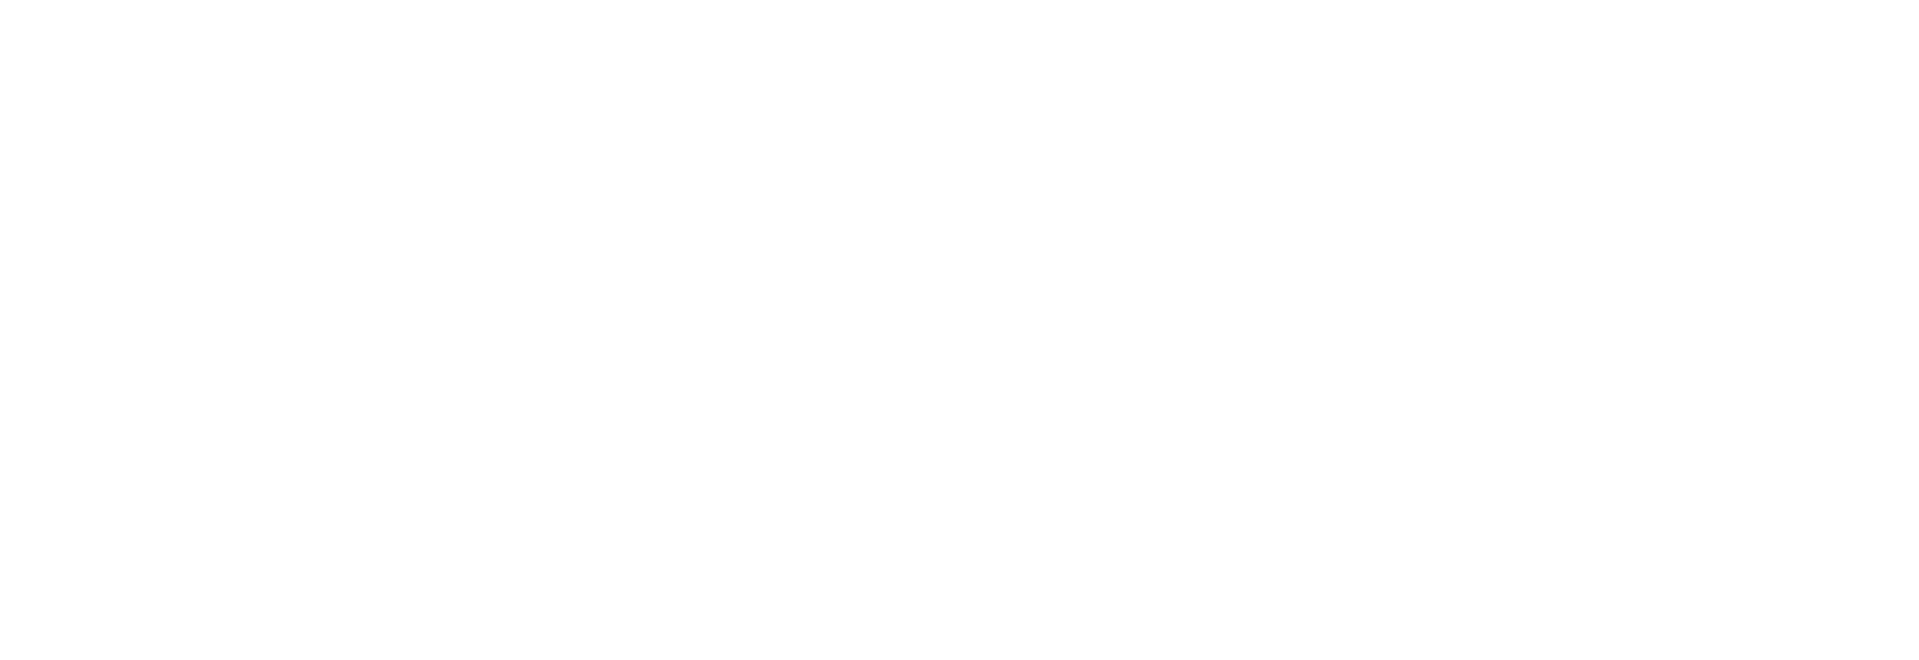 Pairaphrase.com